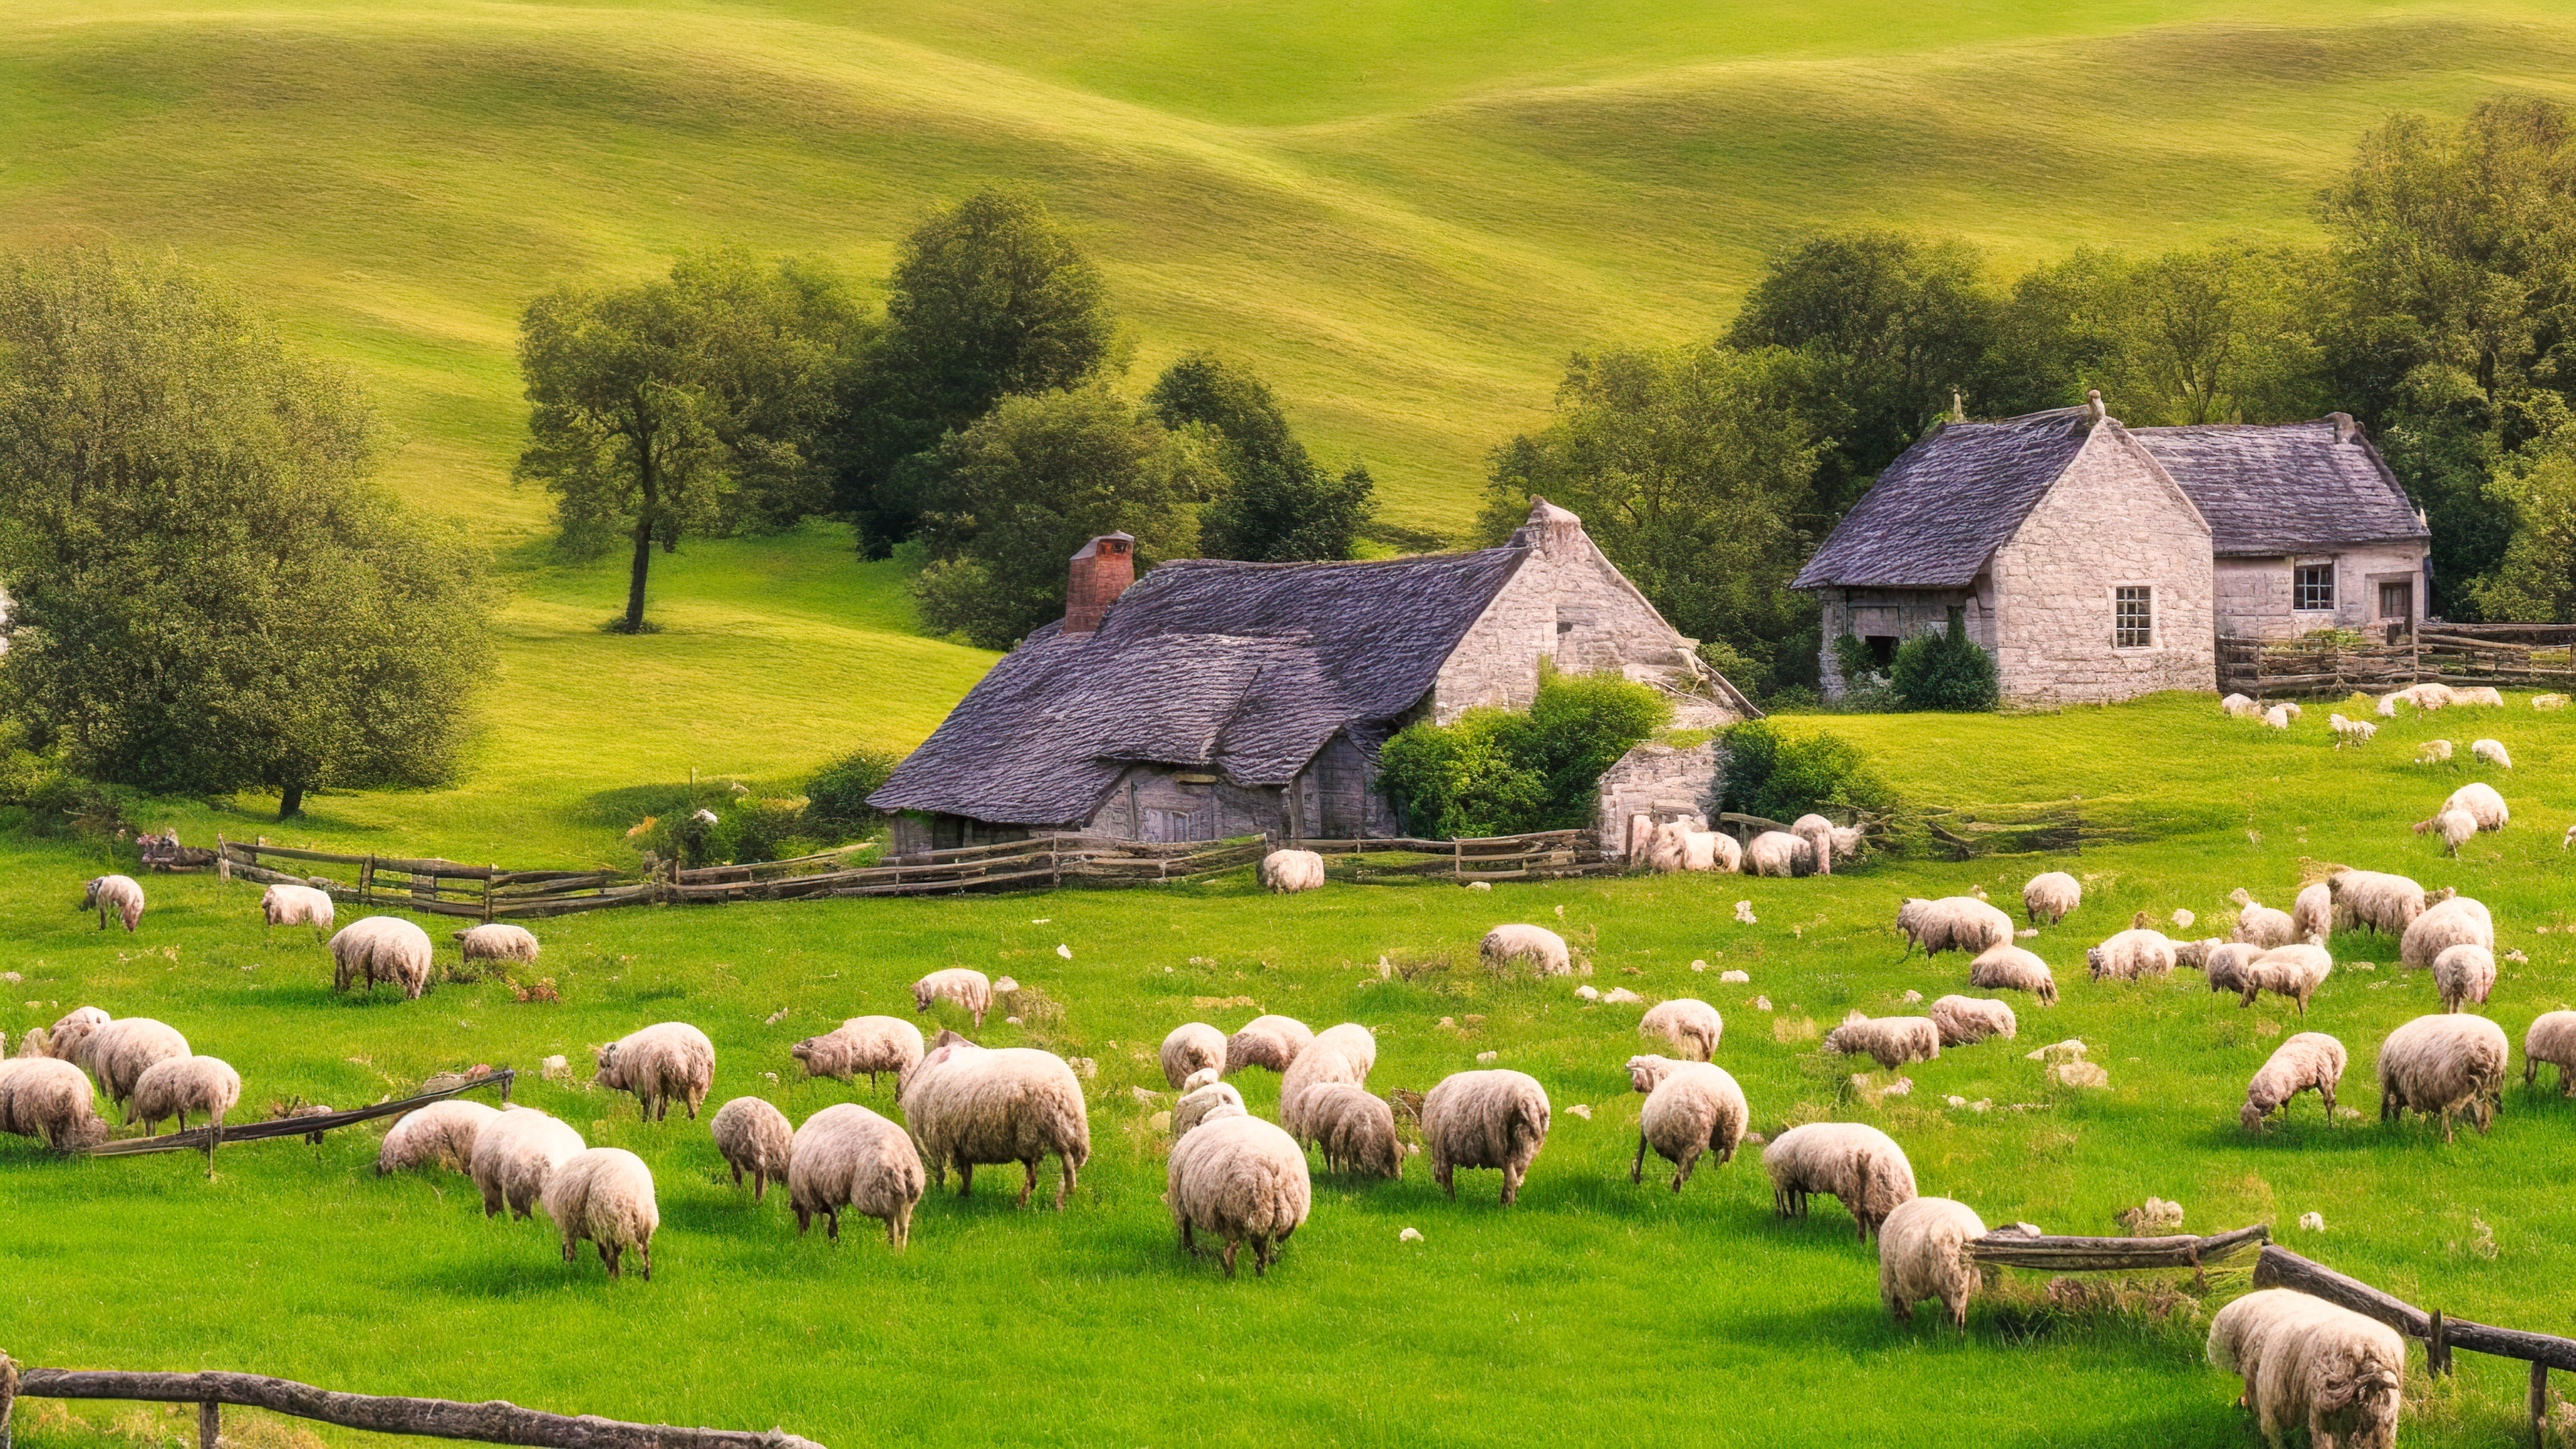 Entrez dans la tranquillité d'un cottage de campagne paisible niché parmi des collines ondulantes, entouré de moutons qui paissent, avec notre fond d'écran de nature en 4K pour votre ordinateur portable.